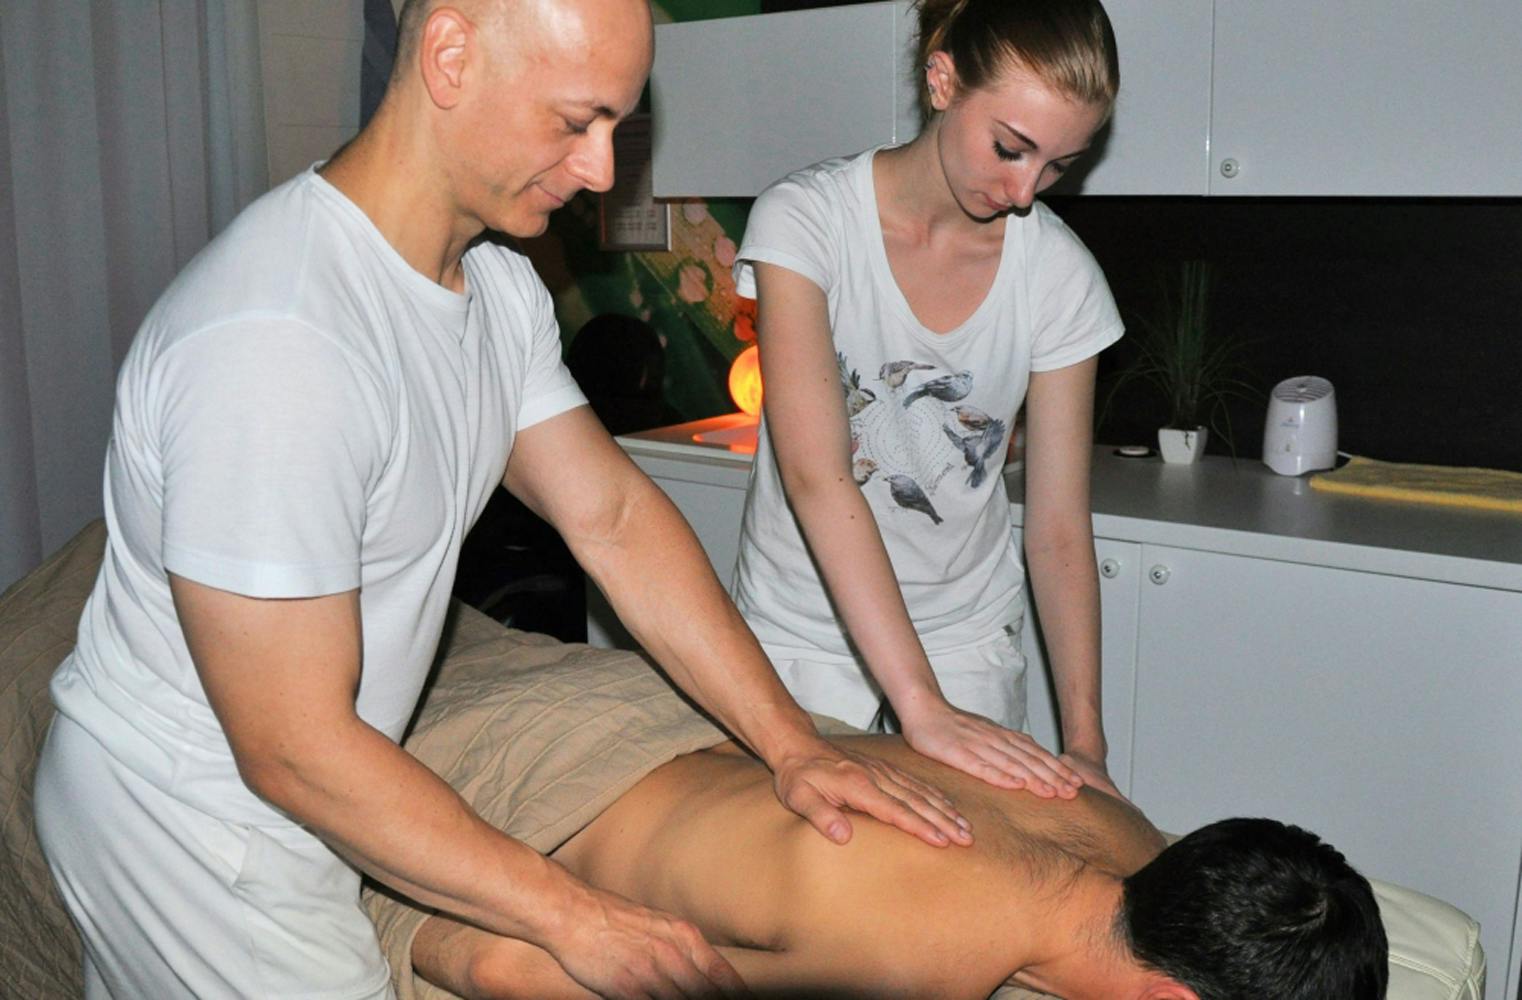 Massage-Kurs für Paare | klassisch oder sinnlich | 2 Stunden